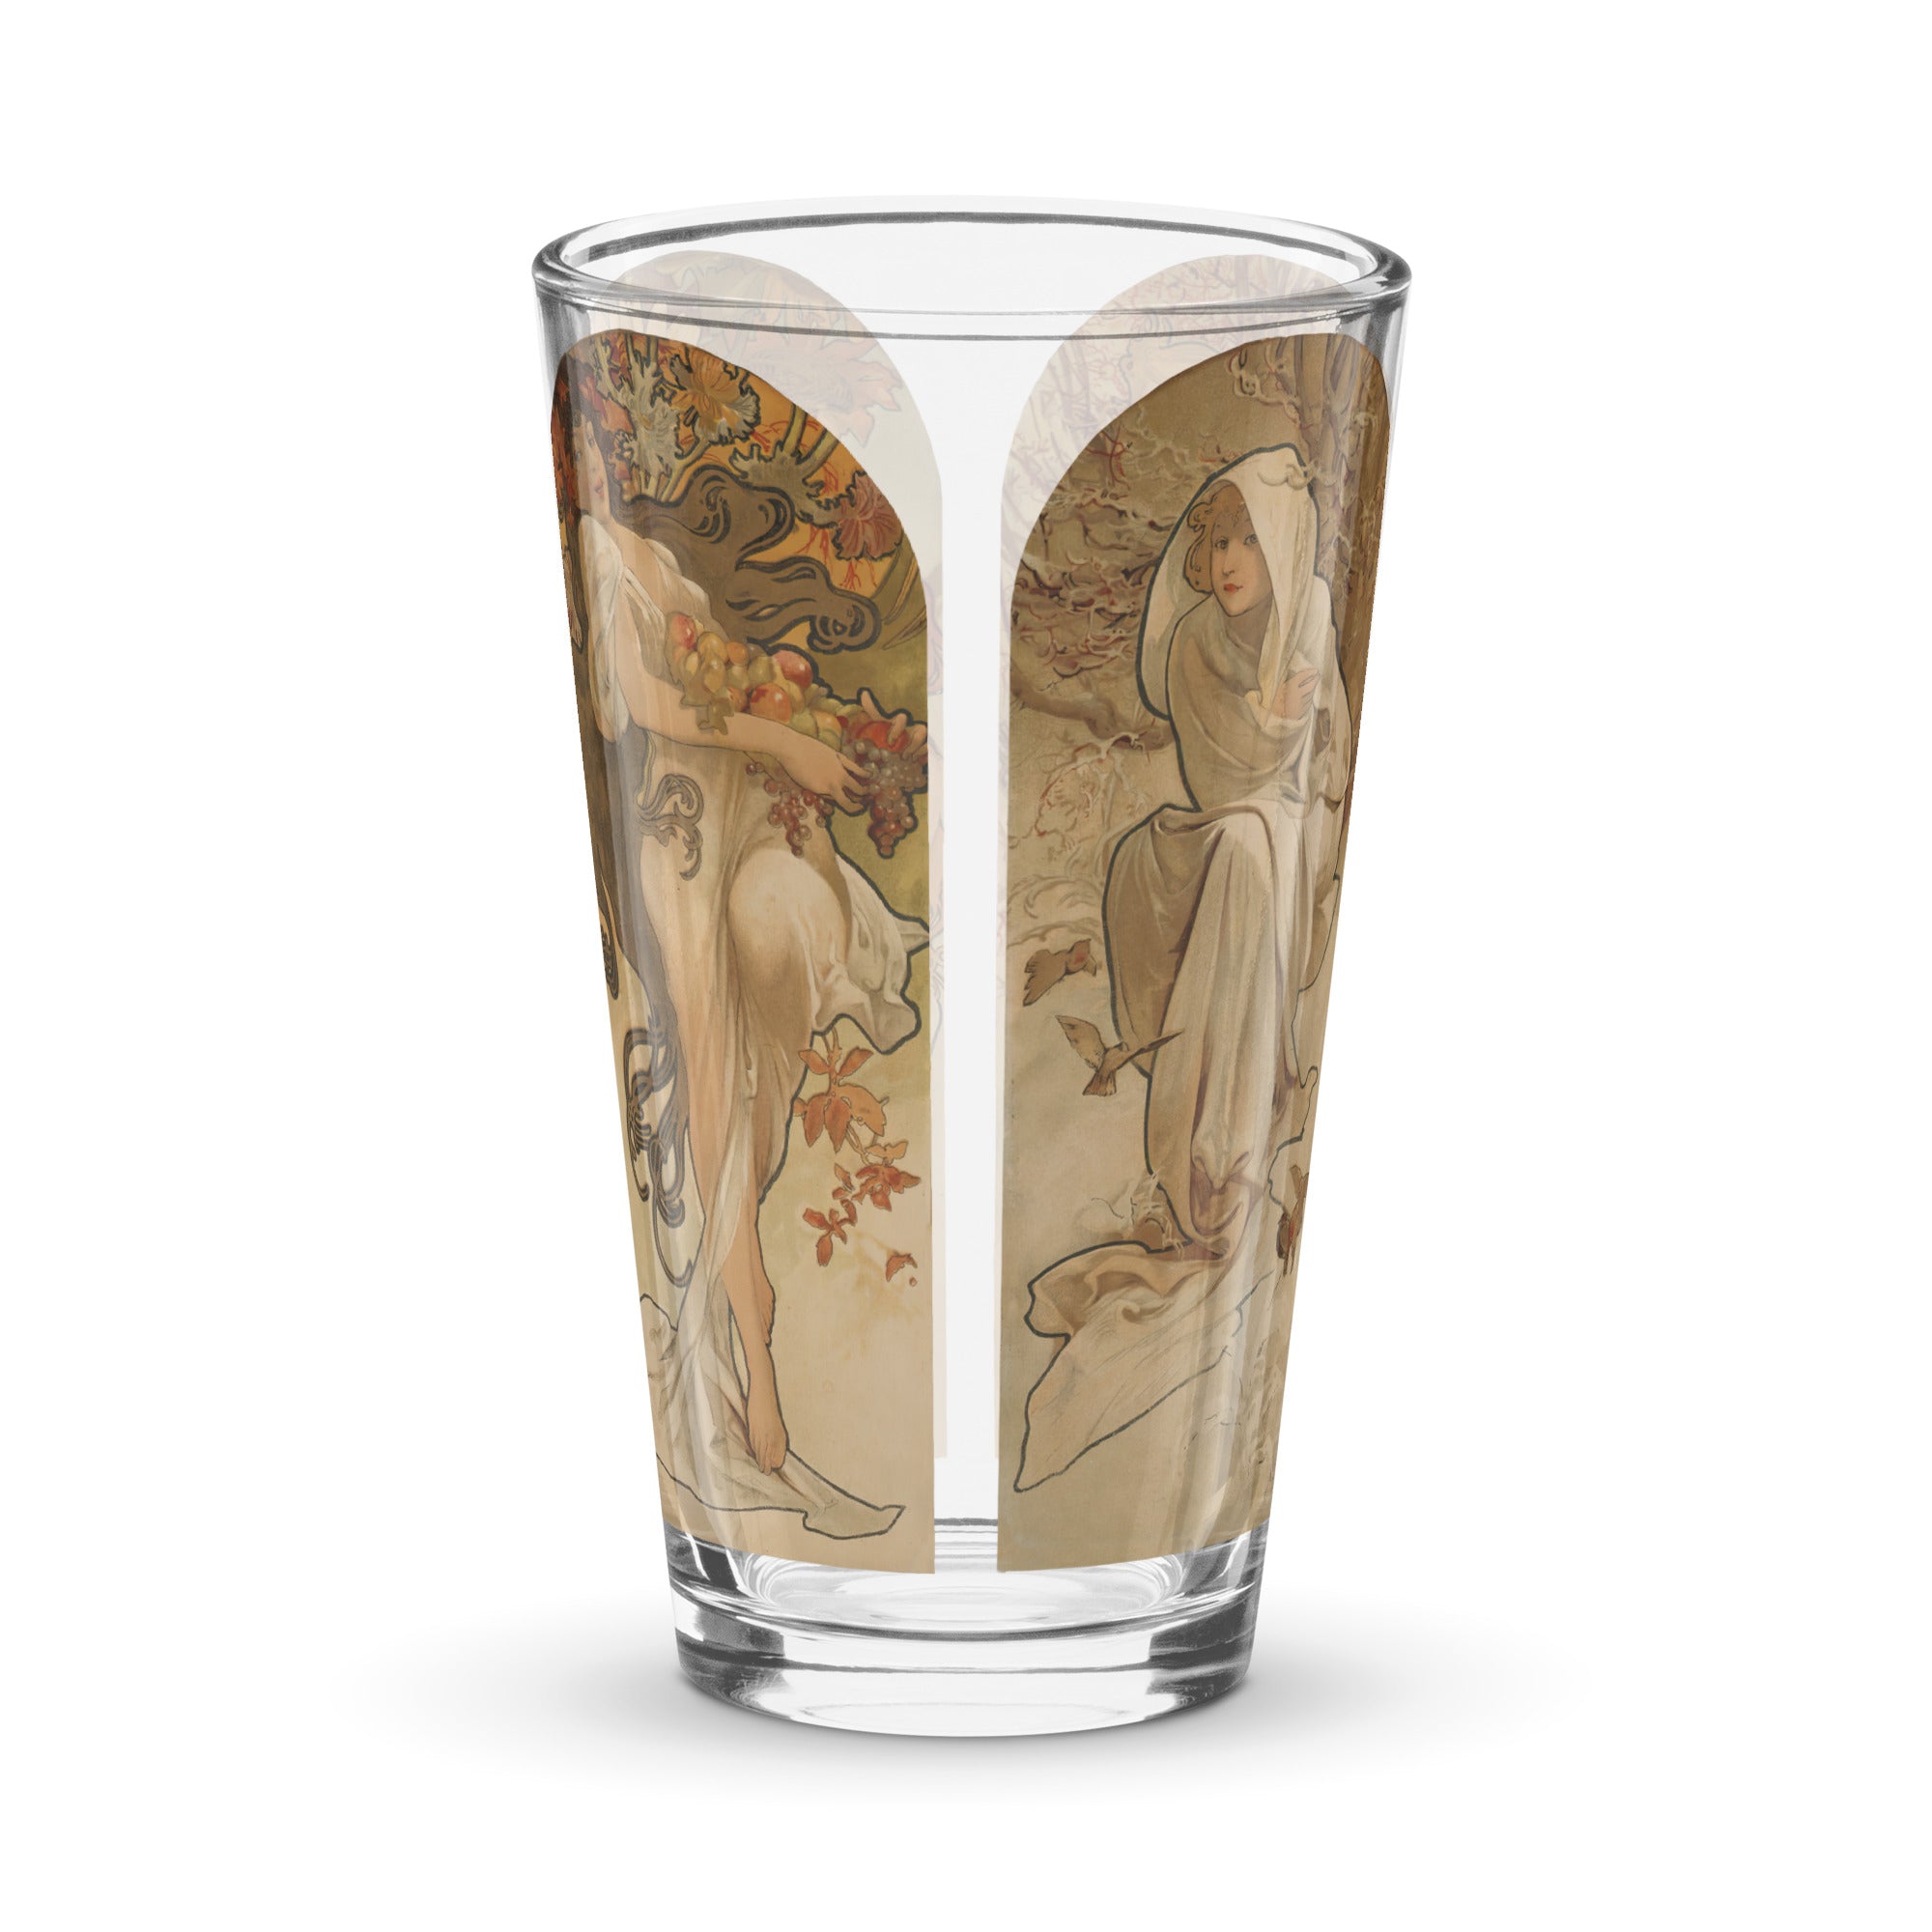 Alphonse Mucha "The Seasons" Pint Glass